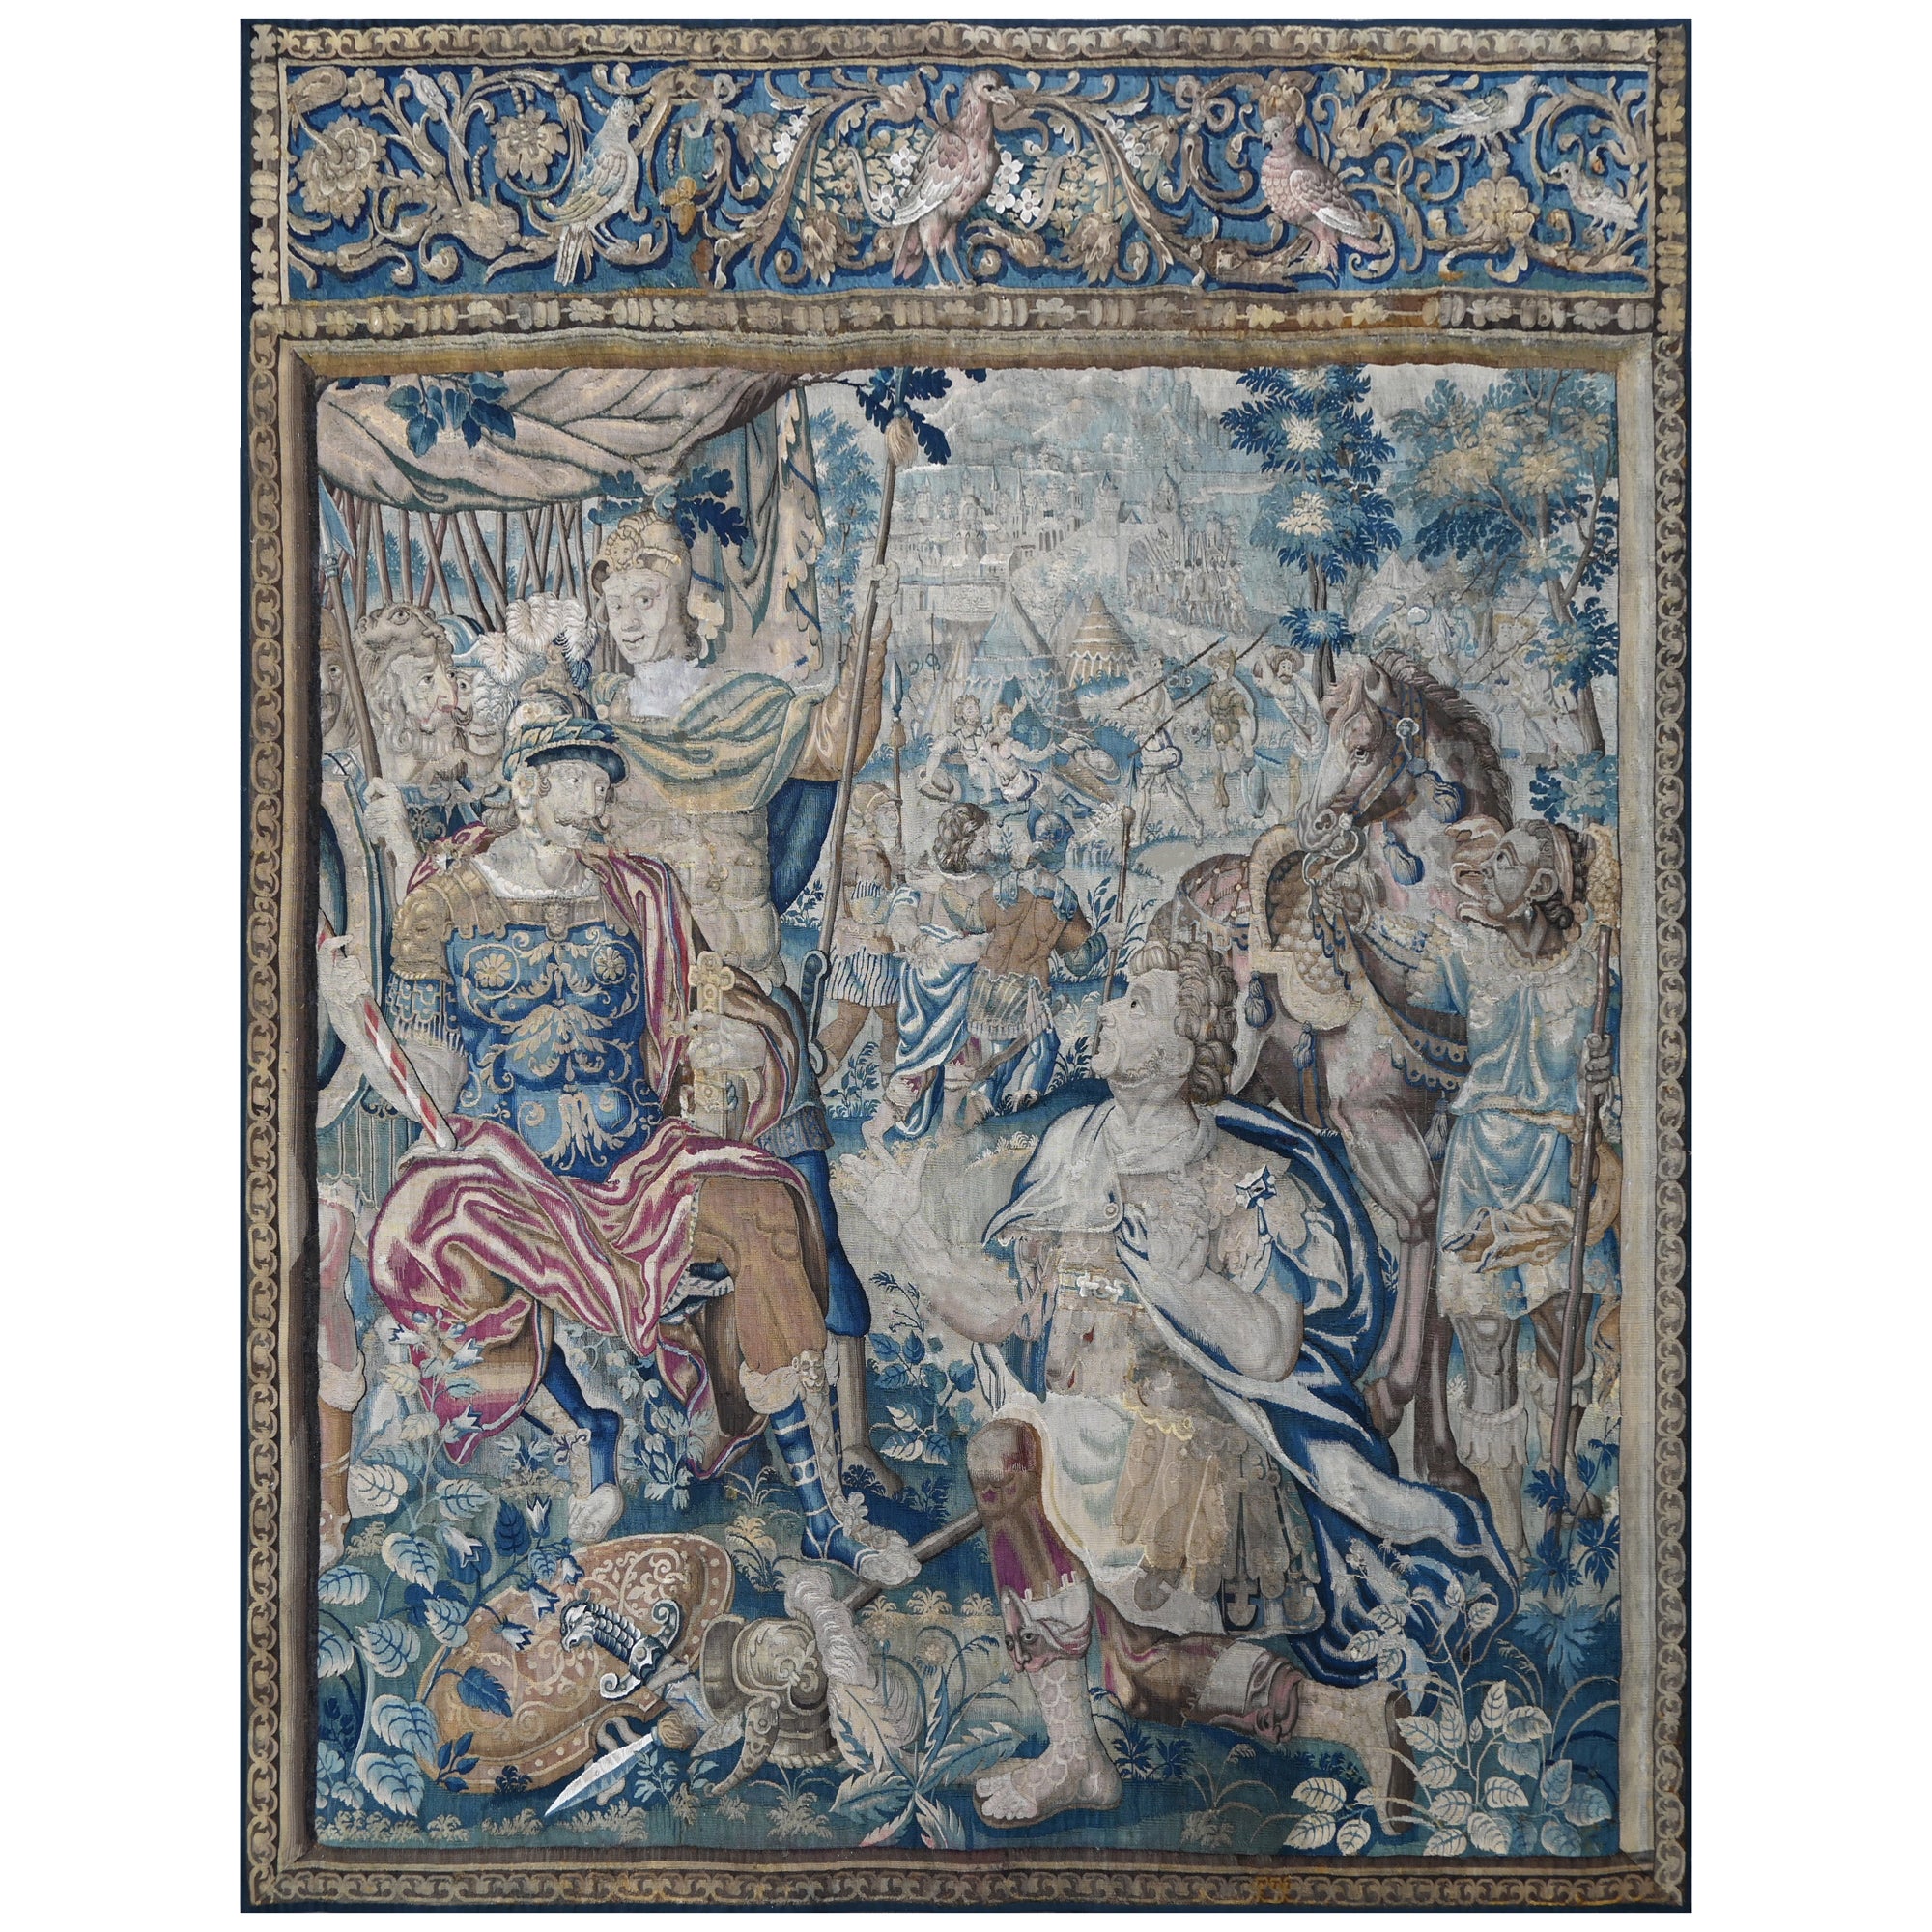 Wandteppich aus Brüsseler Manufaktur - Mitte 17. Jahrhundert - L2m40xh2m80 - N° 1375 im Angebot